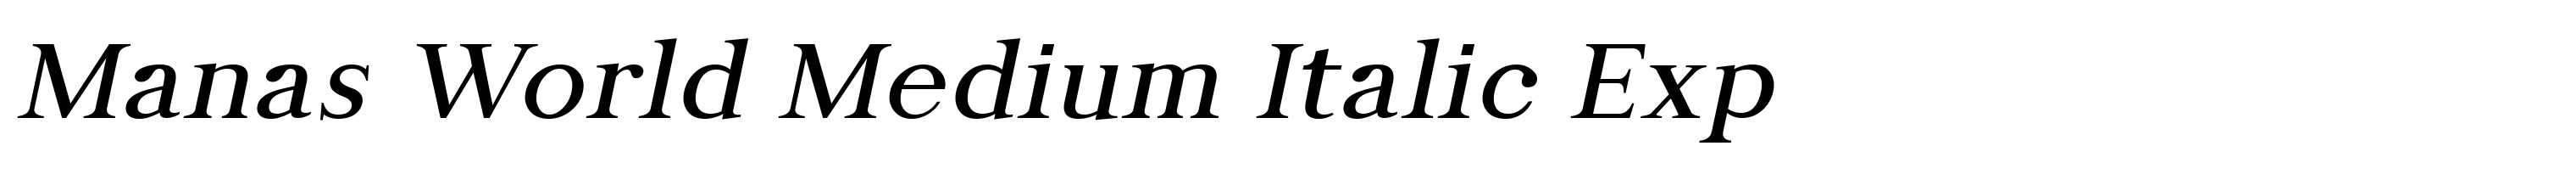 Manas World Medium Italic Exp